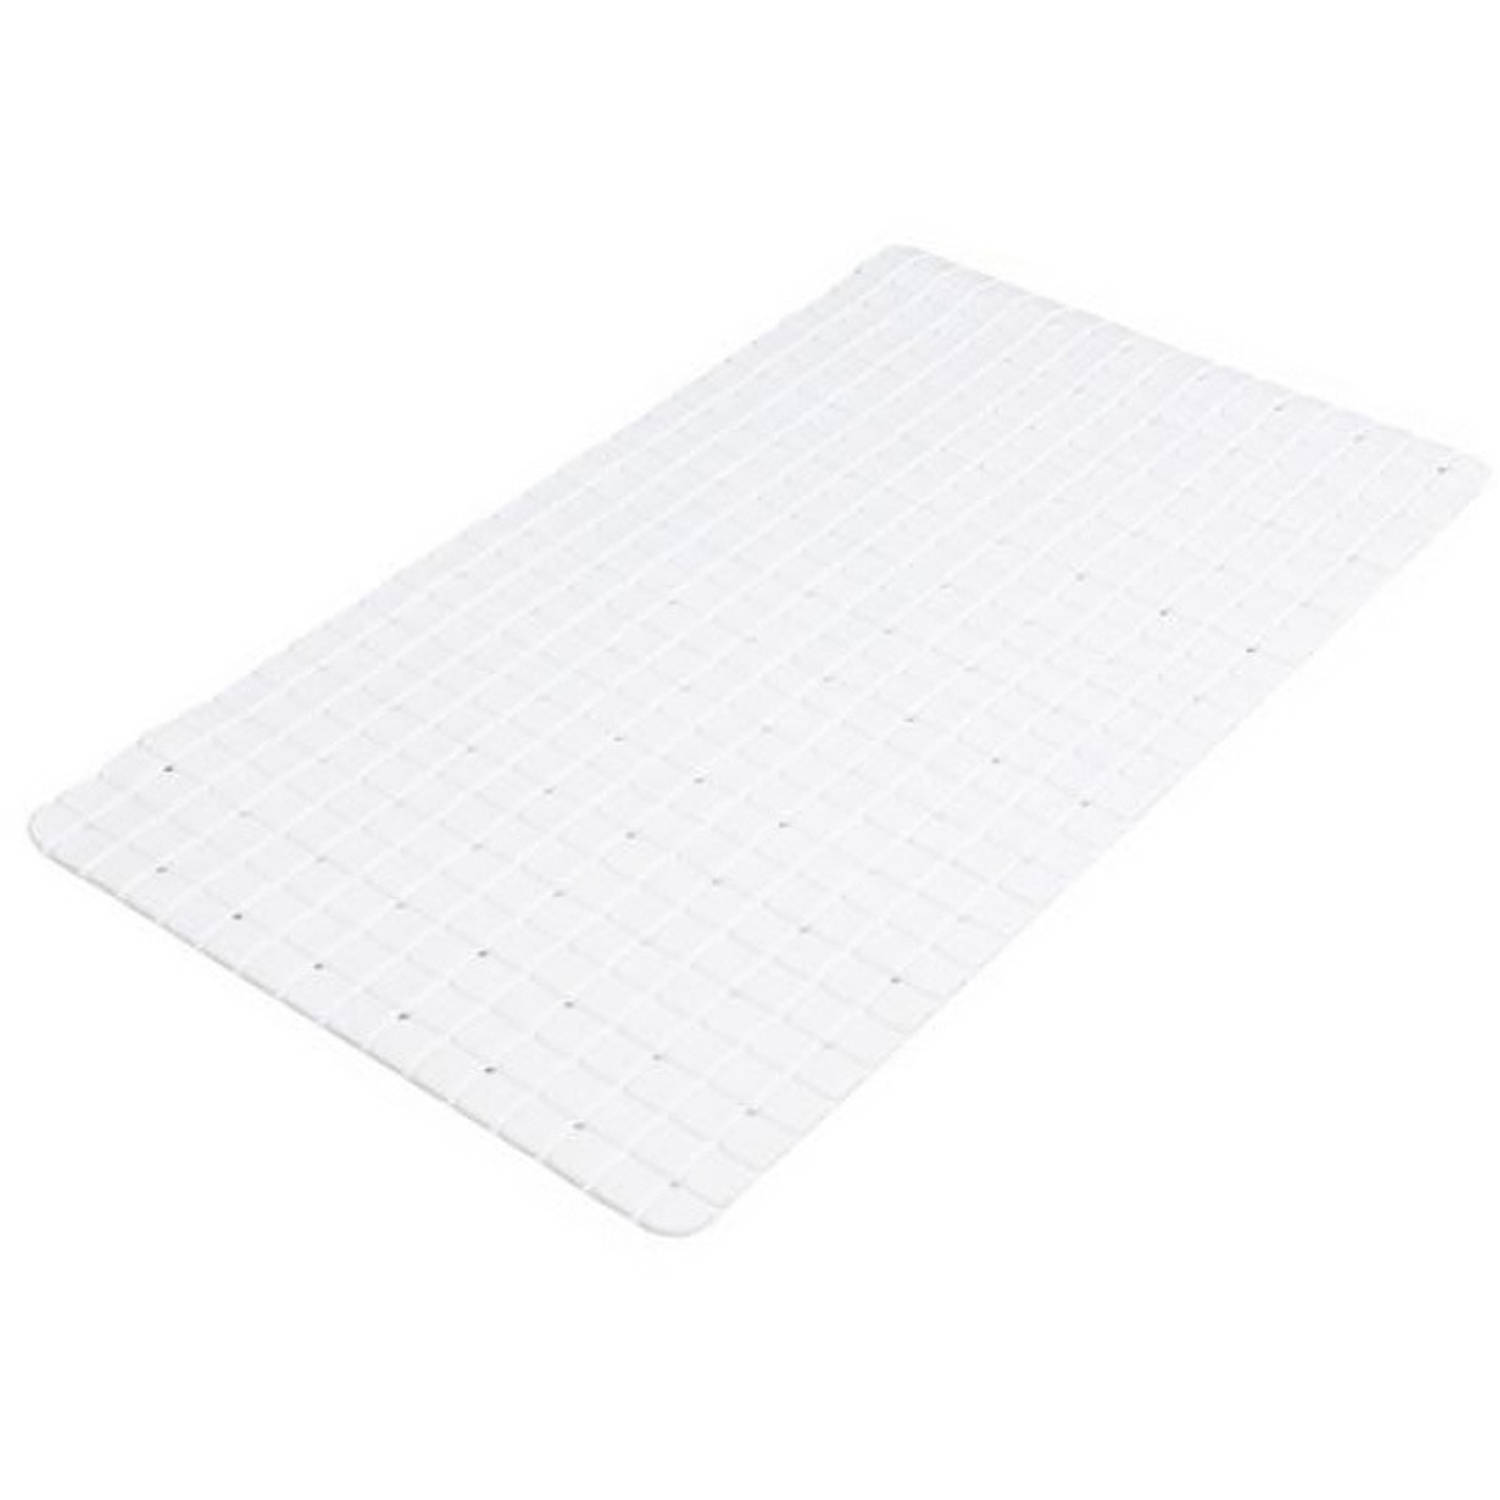 Urban Living Badkamer-douche anti slip mat rubber voor op de vloer wit 39 x 69 cm Badmatjes